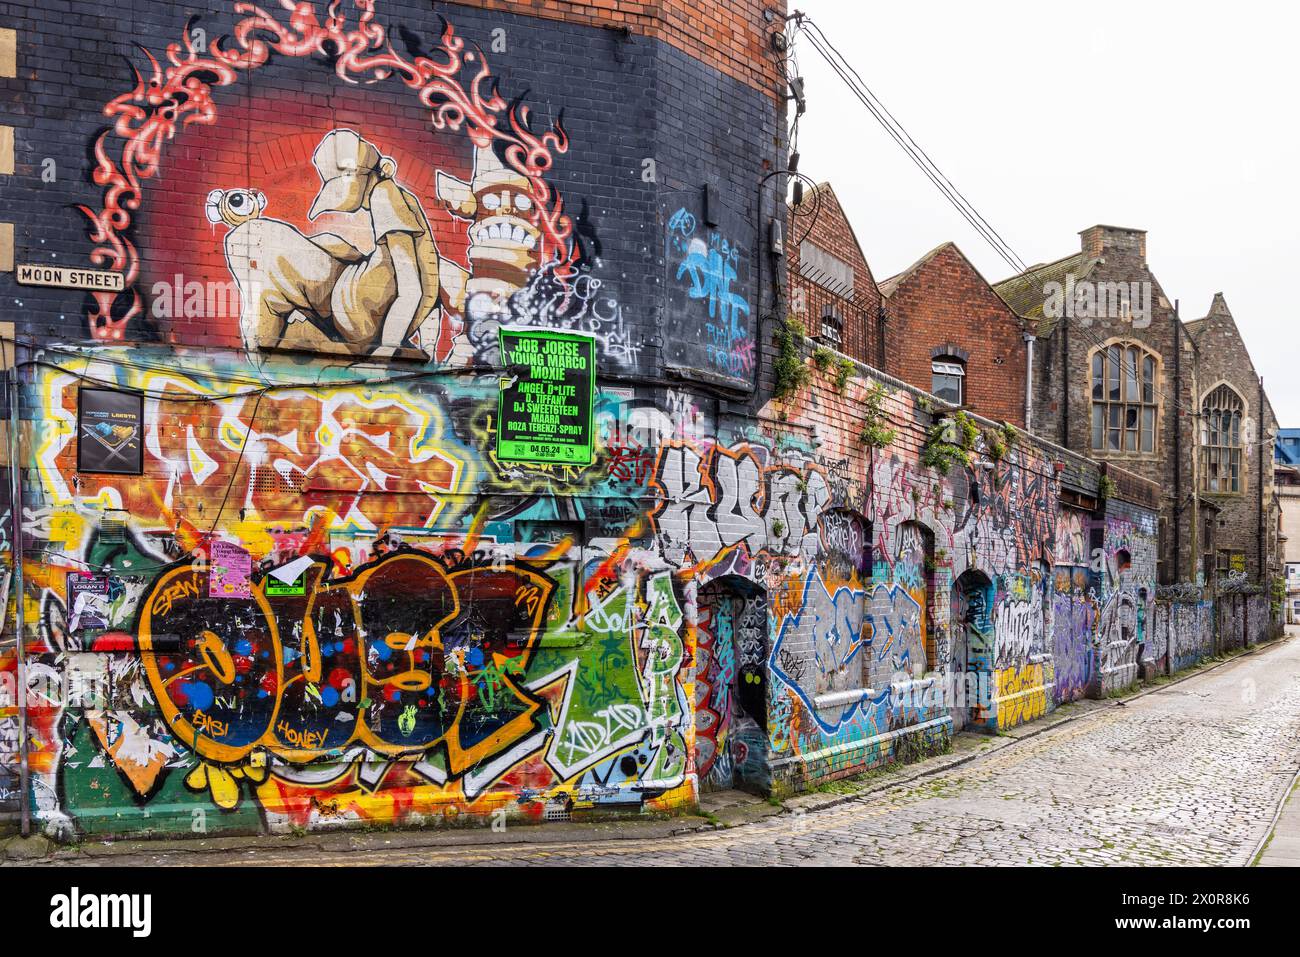 Arte di strada contemporanea - graffiti urbani sulle pareti in Moon Street, Stokes Croft, Bristol, Inghilterra, Regno Unito Foto Stock